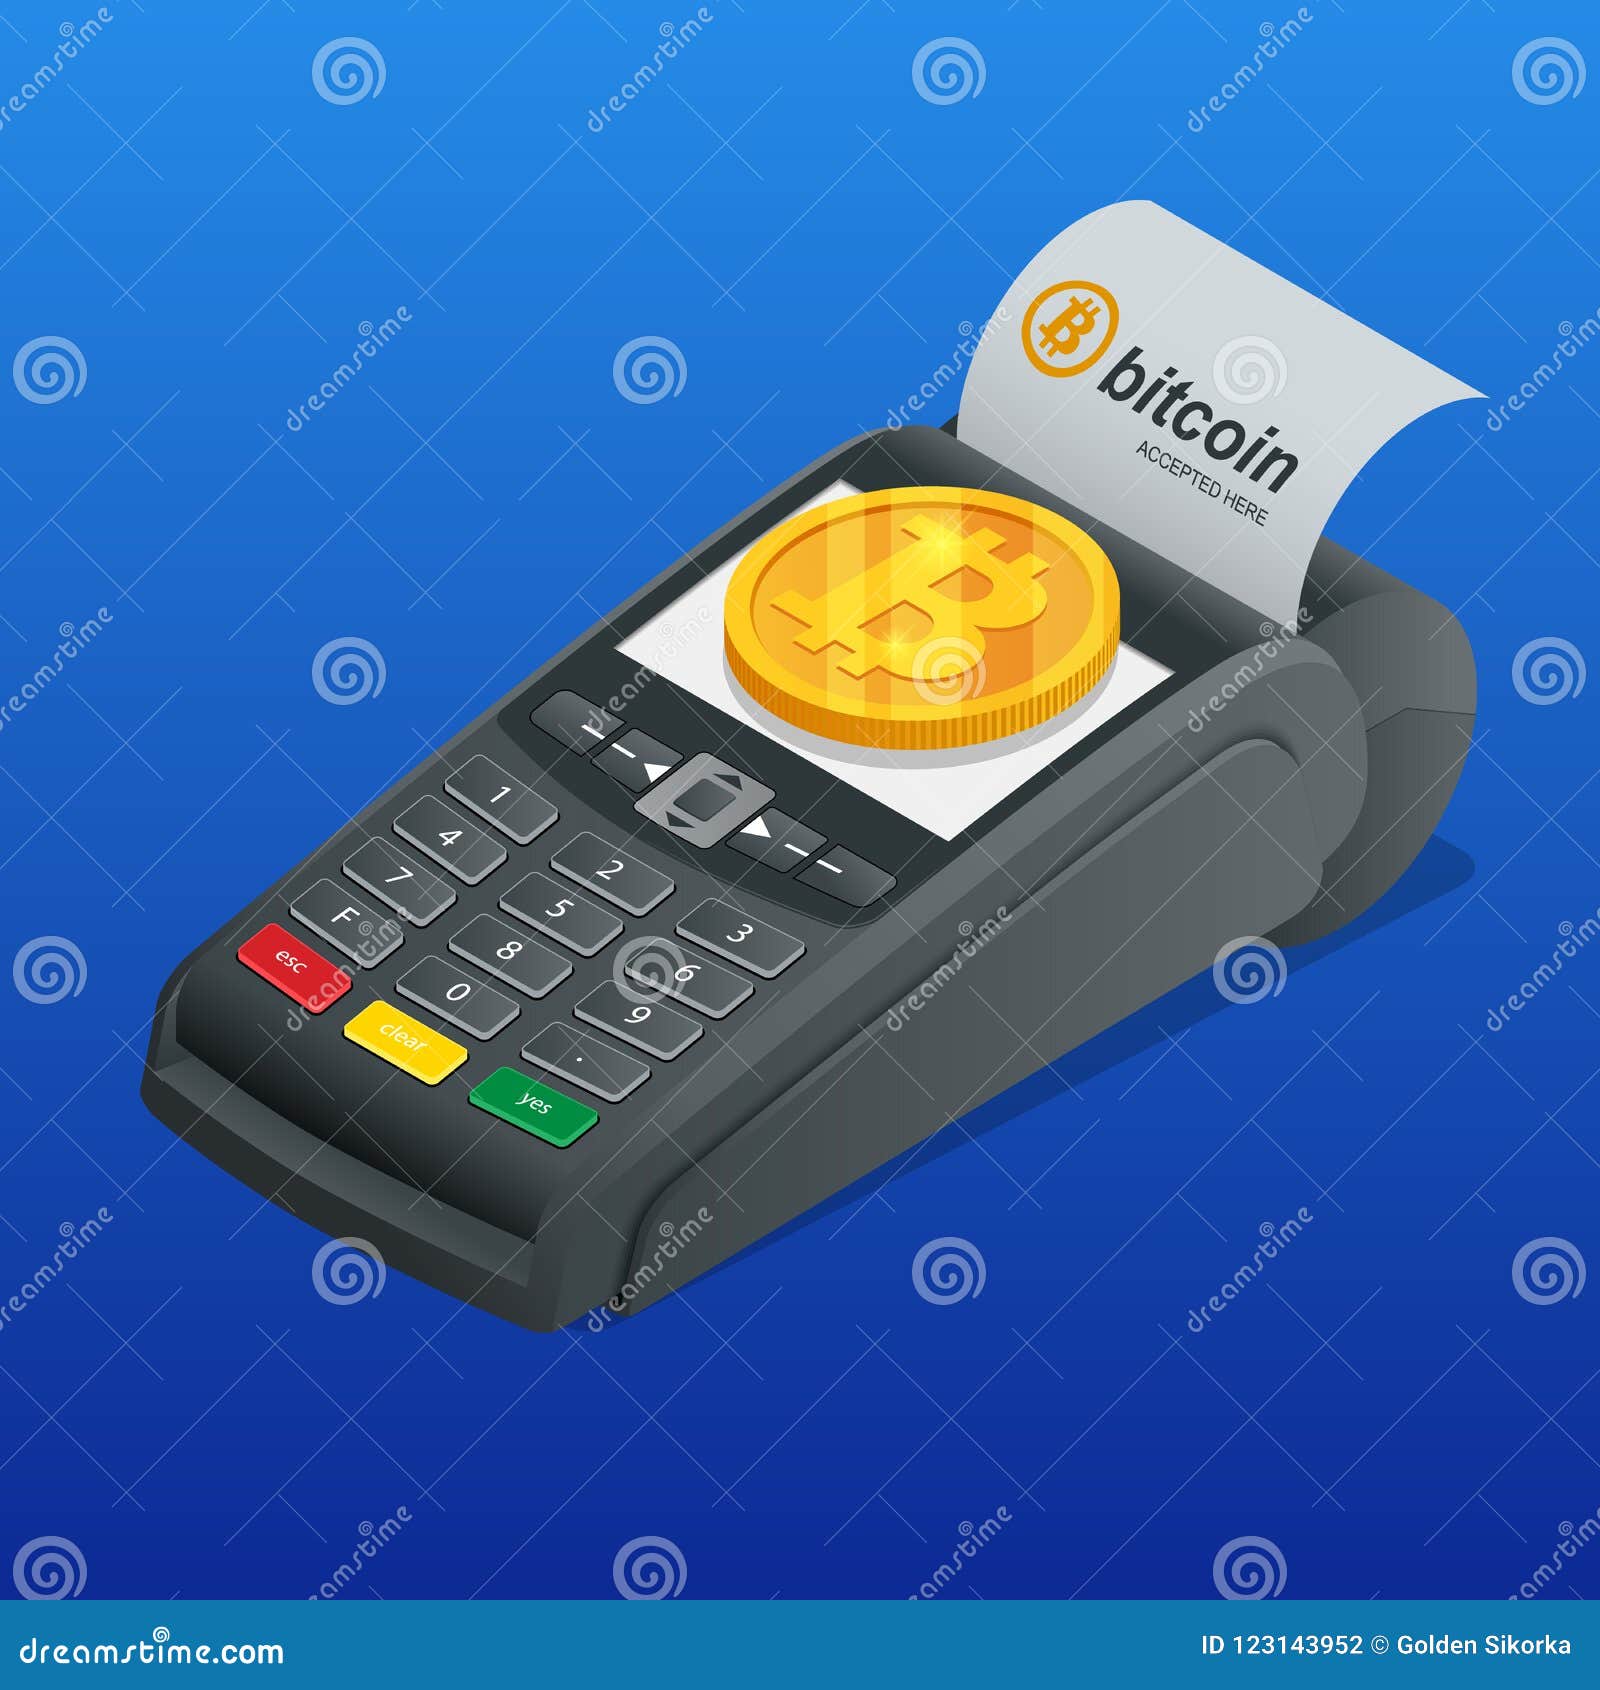 pagamento nfc bitcoin omc a btc